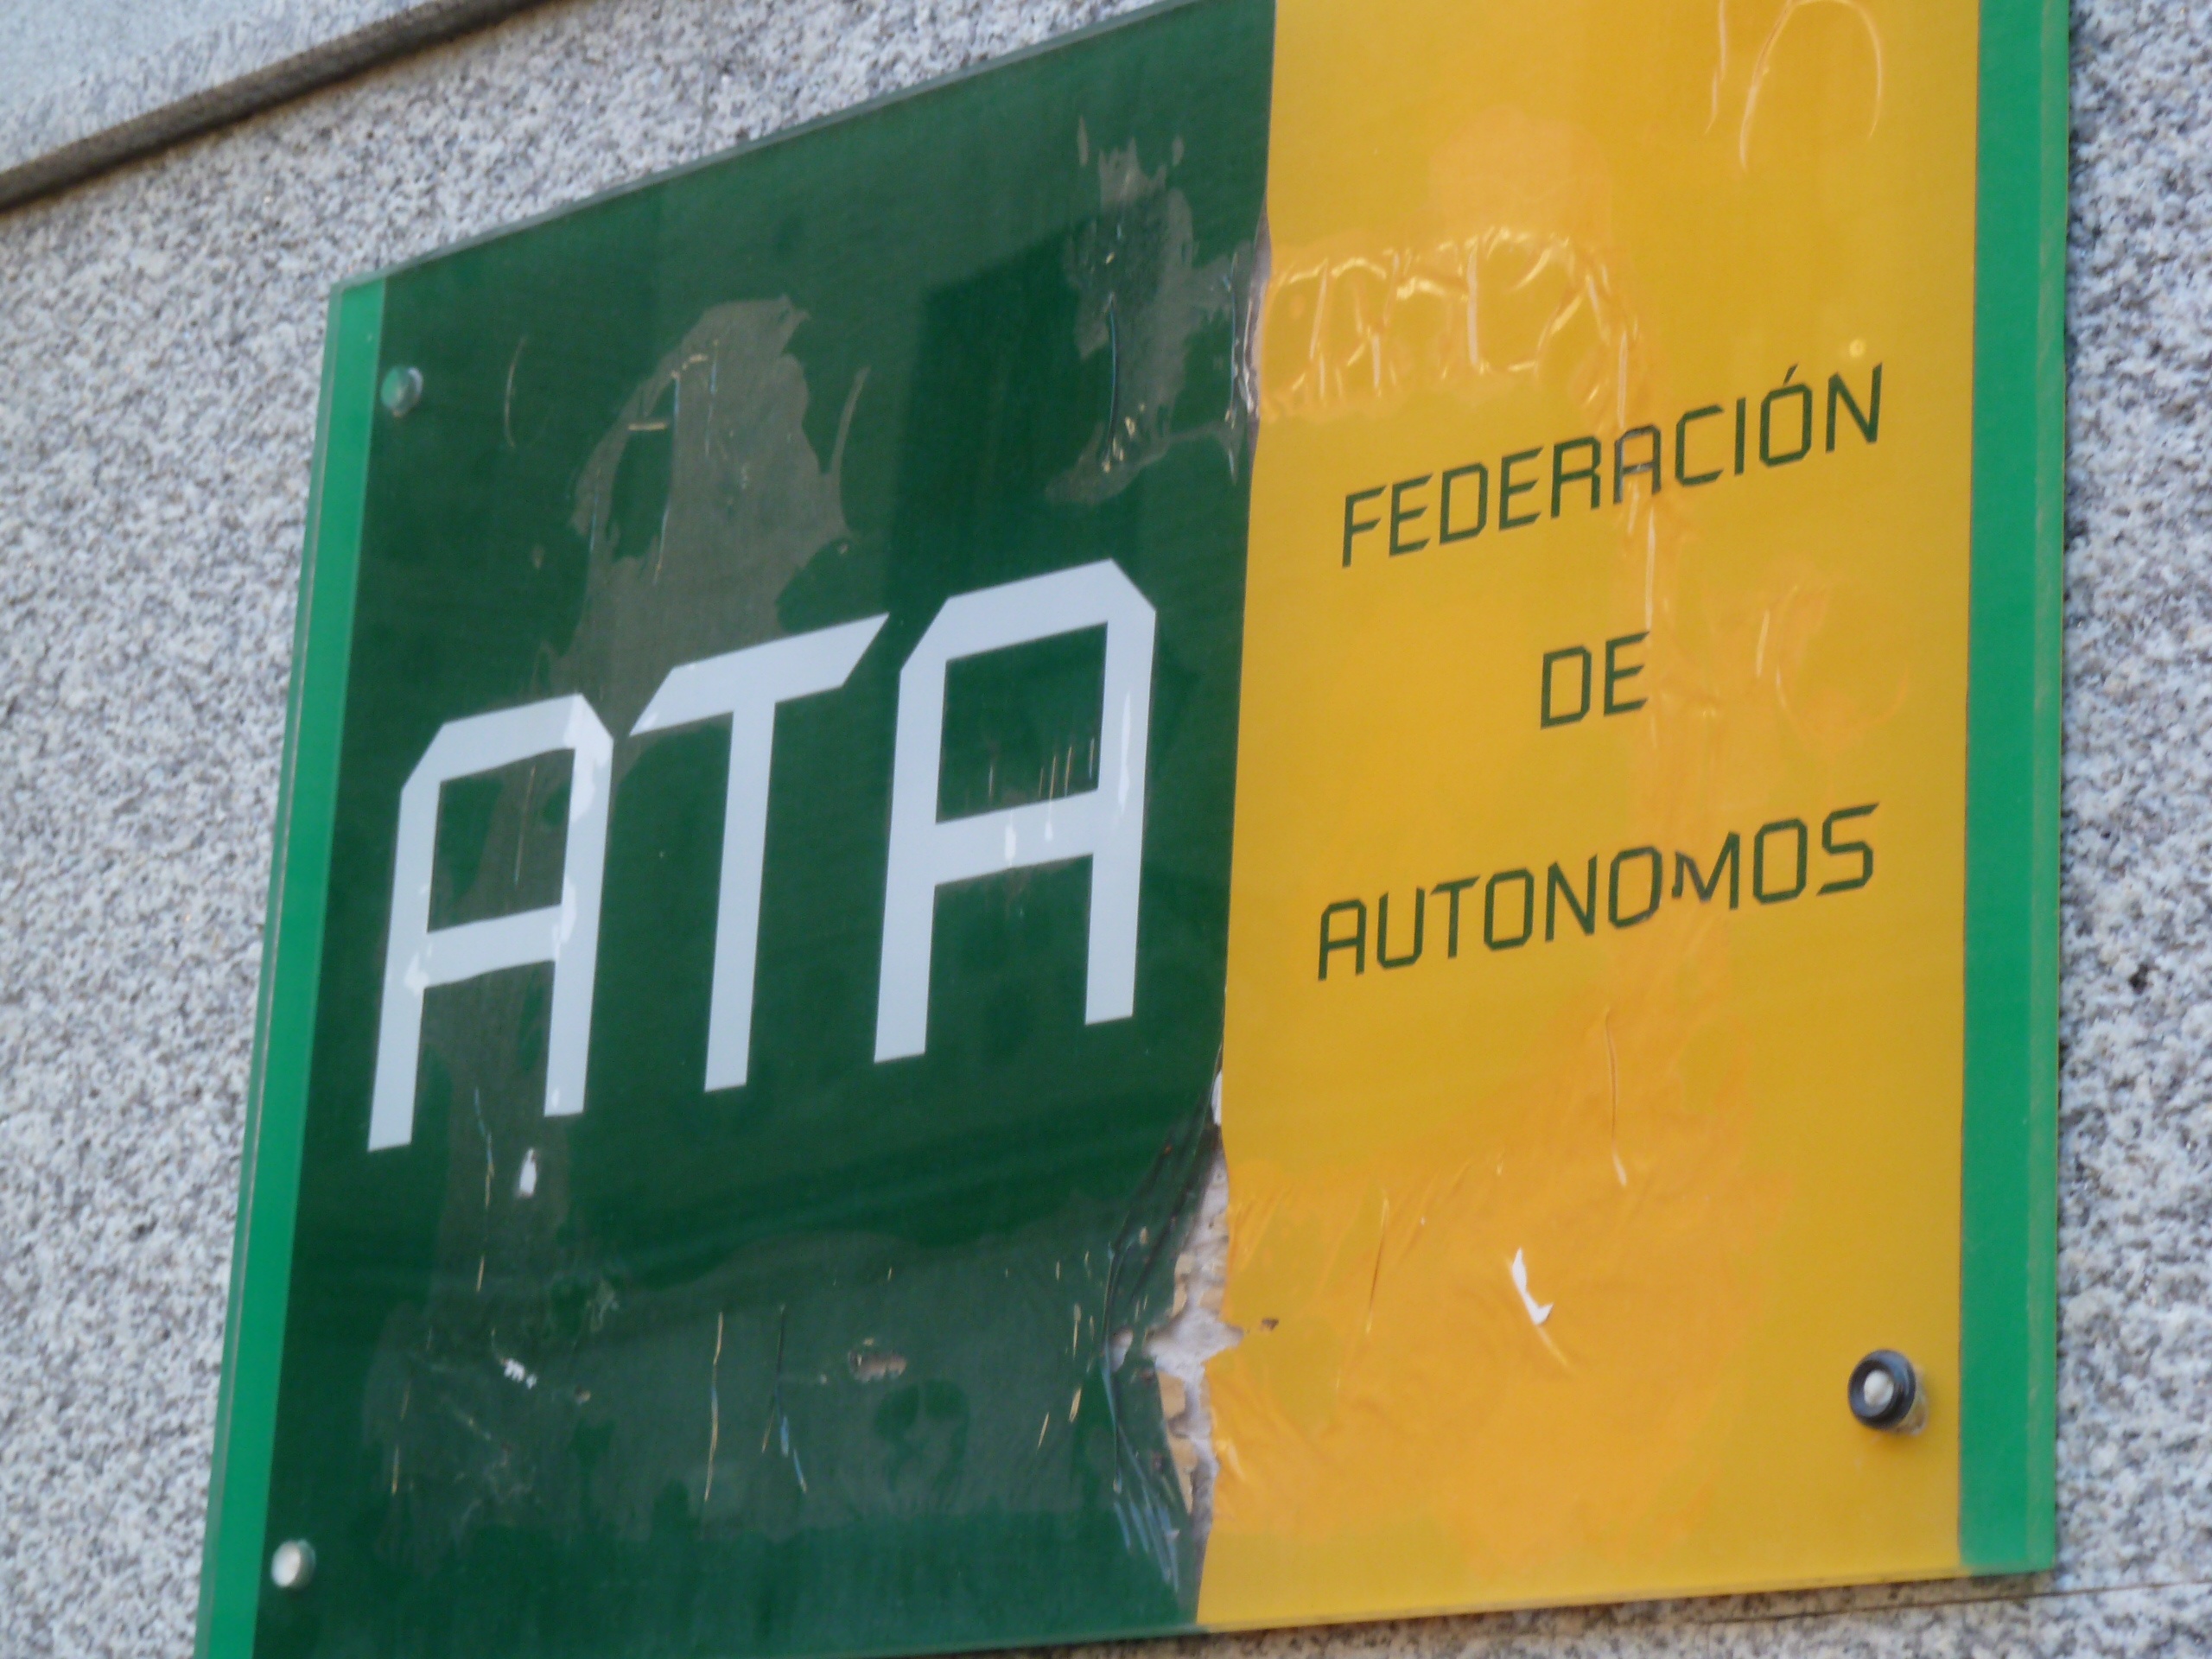 Los autónomos de Navarra han adelantado 28 millones por el IVA de facturas no cobradas, según ATA